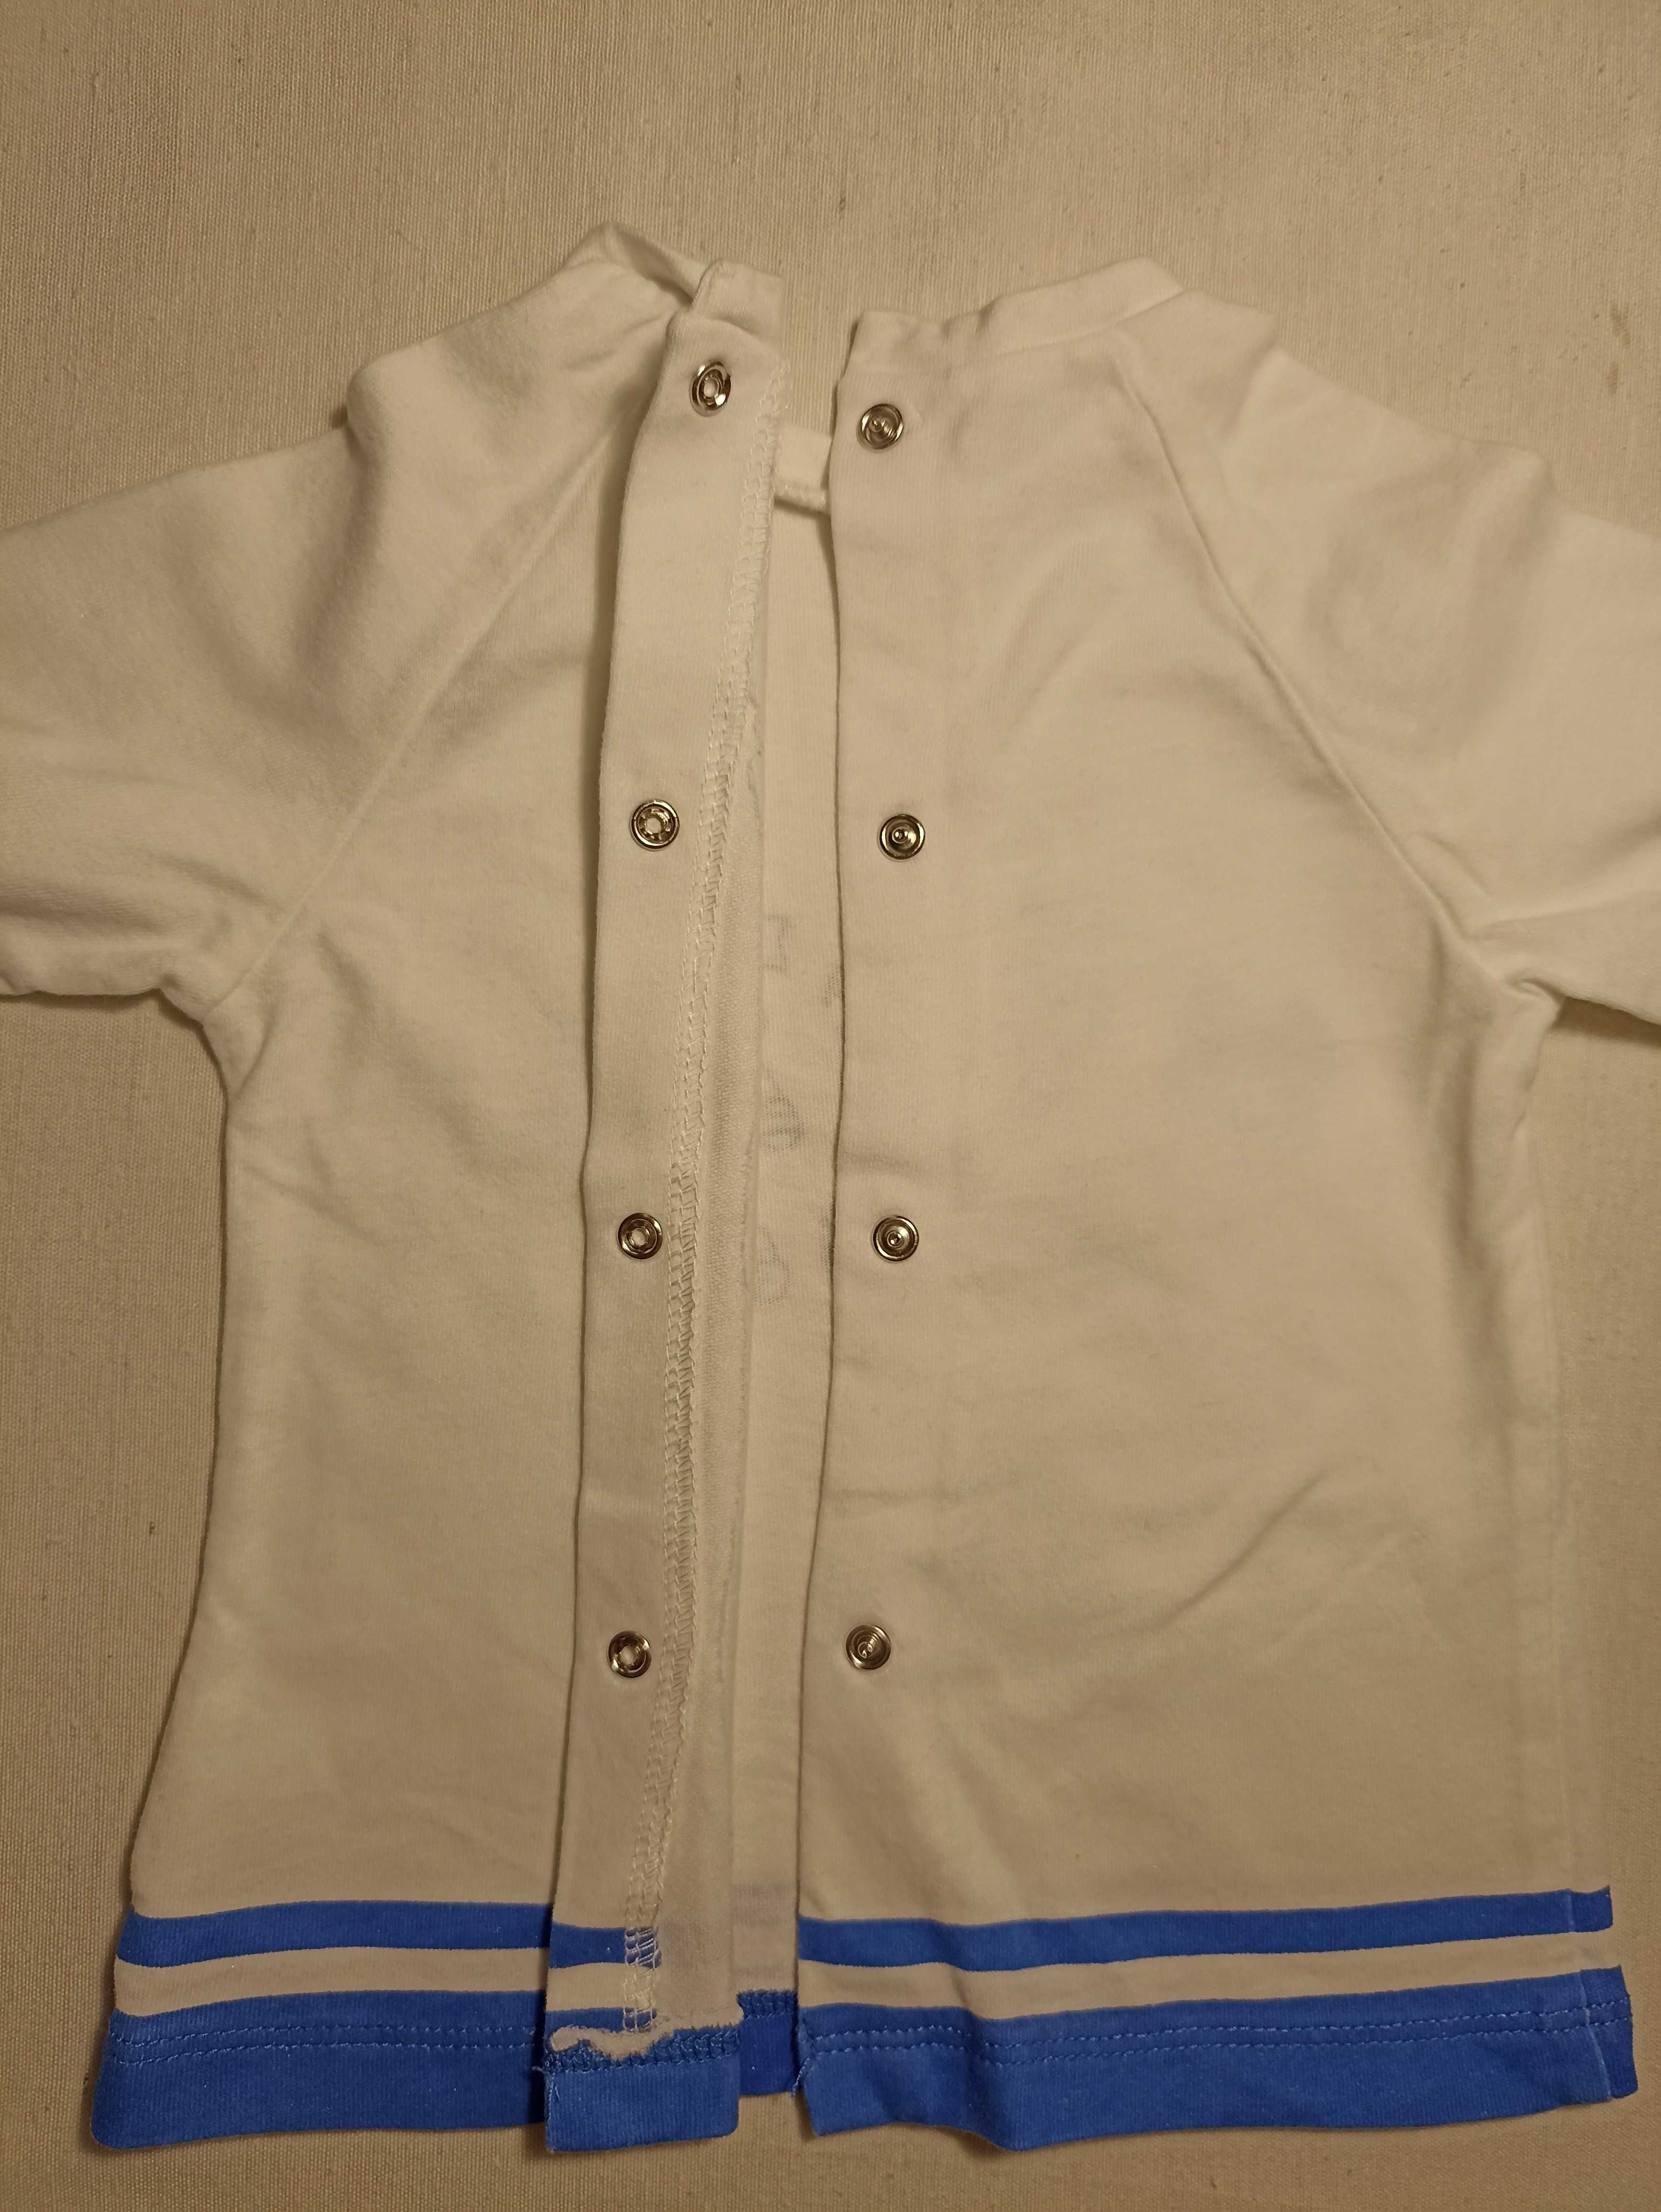 Комплект блузи с дълъг ръкав за момче Mayoral - 2 бр. 80 см, 12 мес.